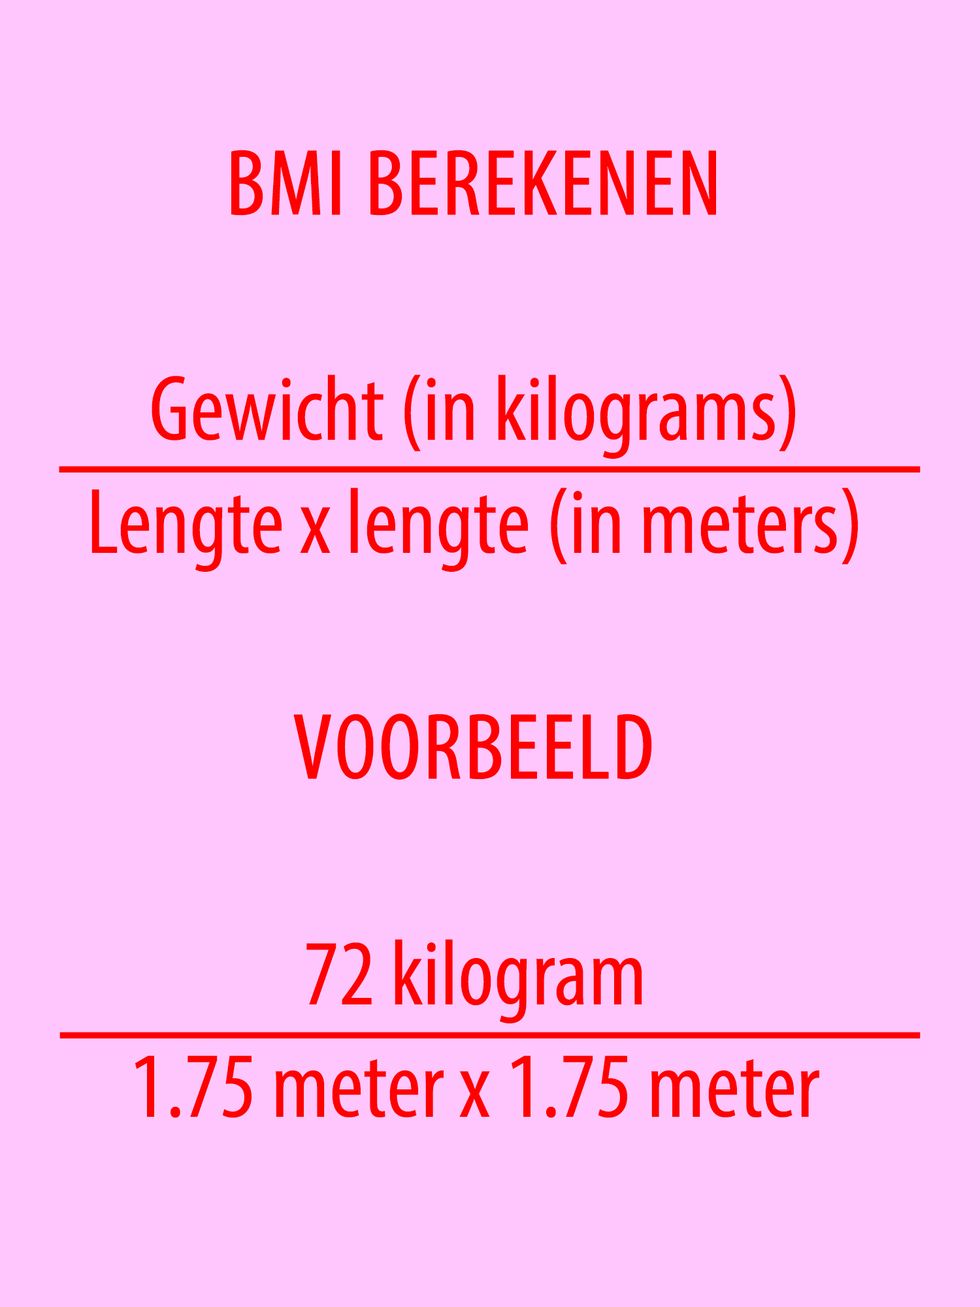 BMI-berekenen